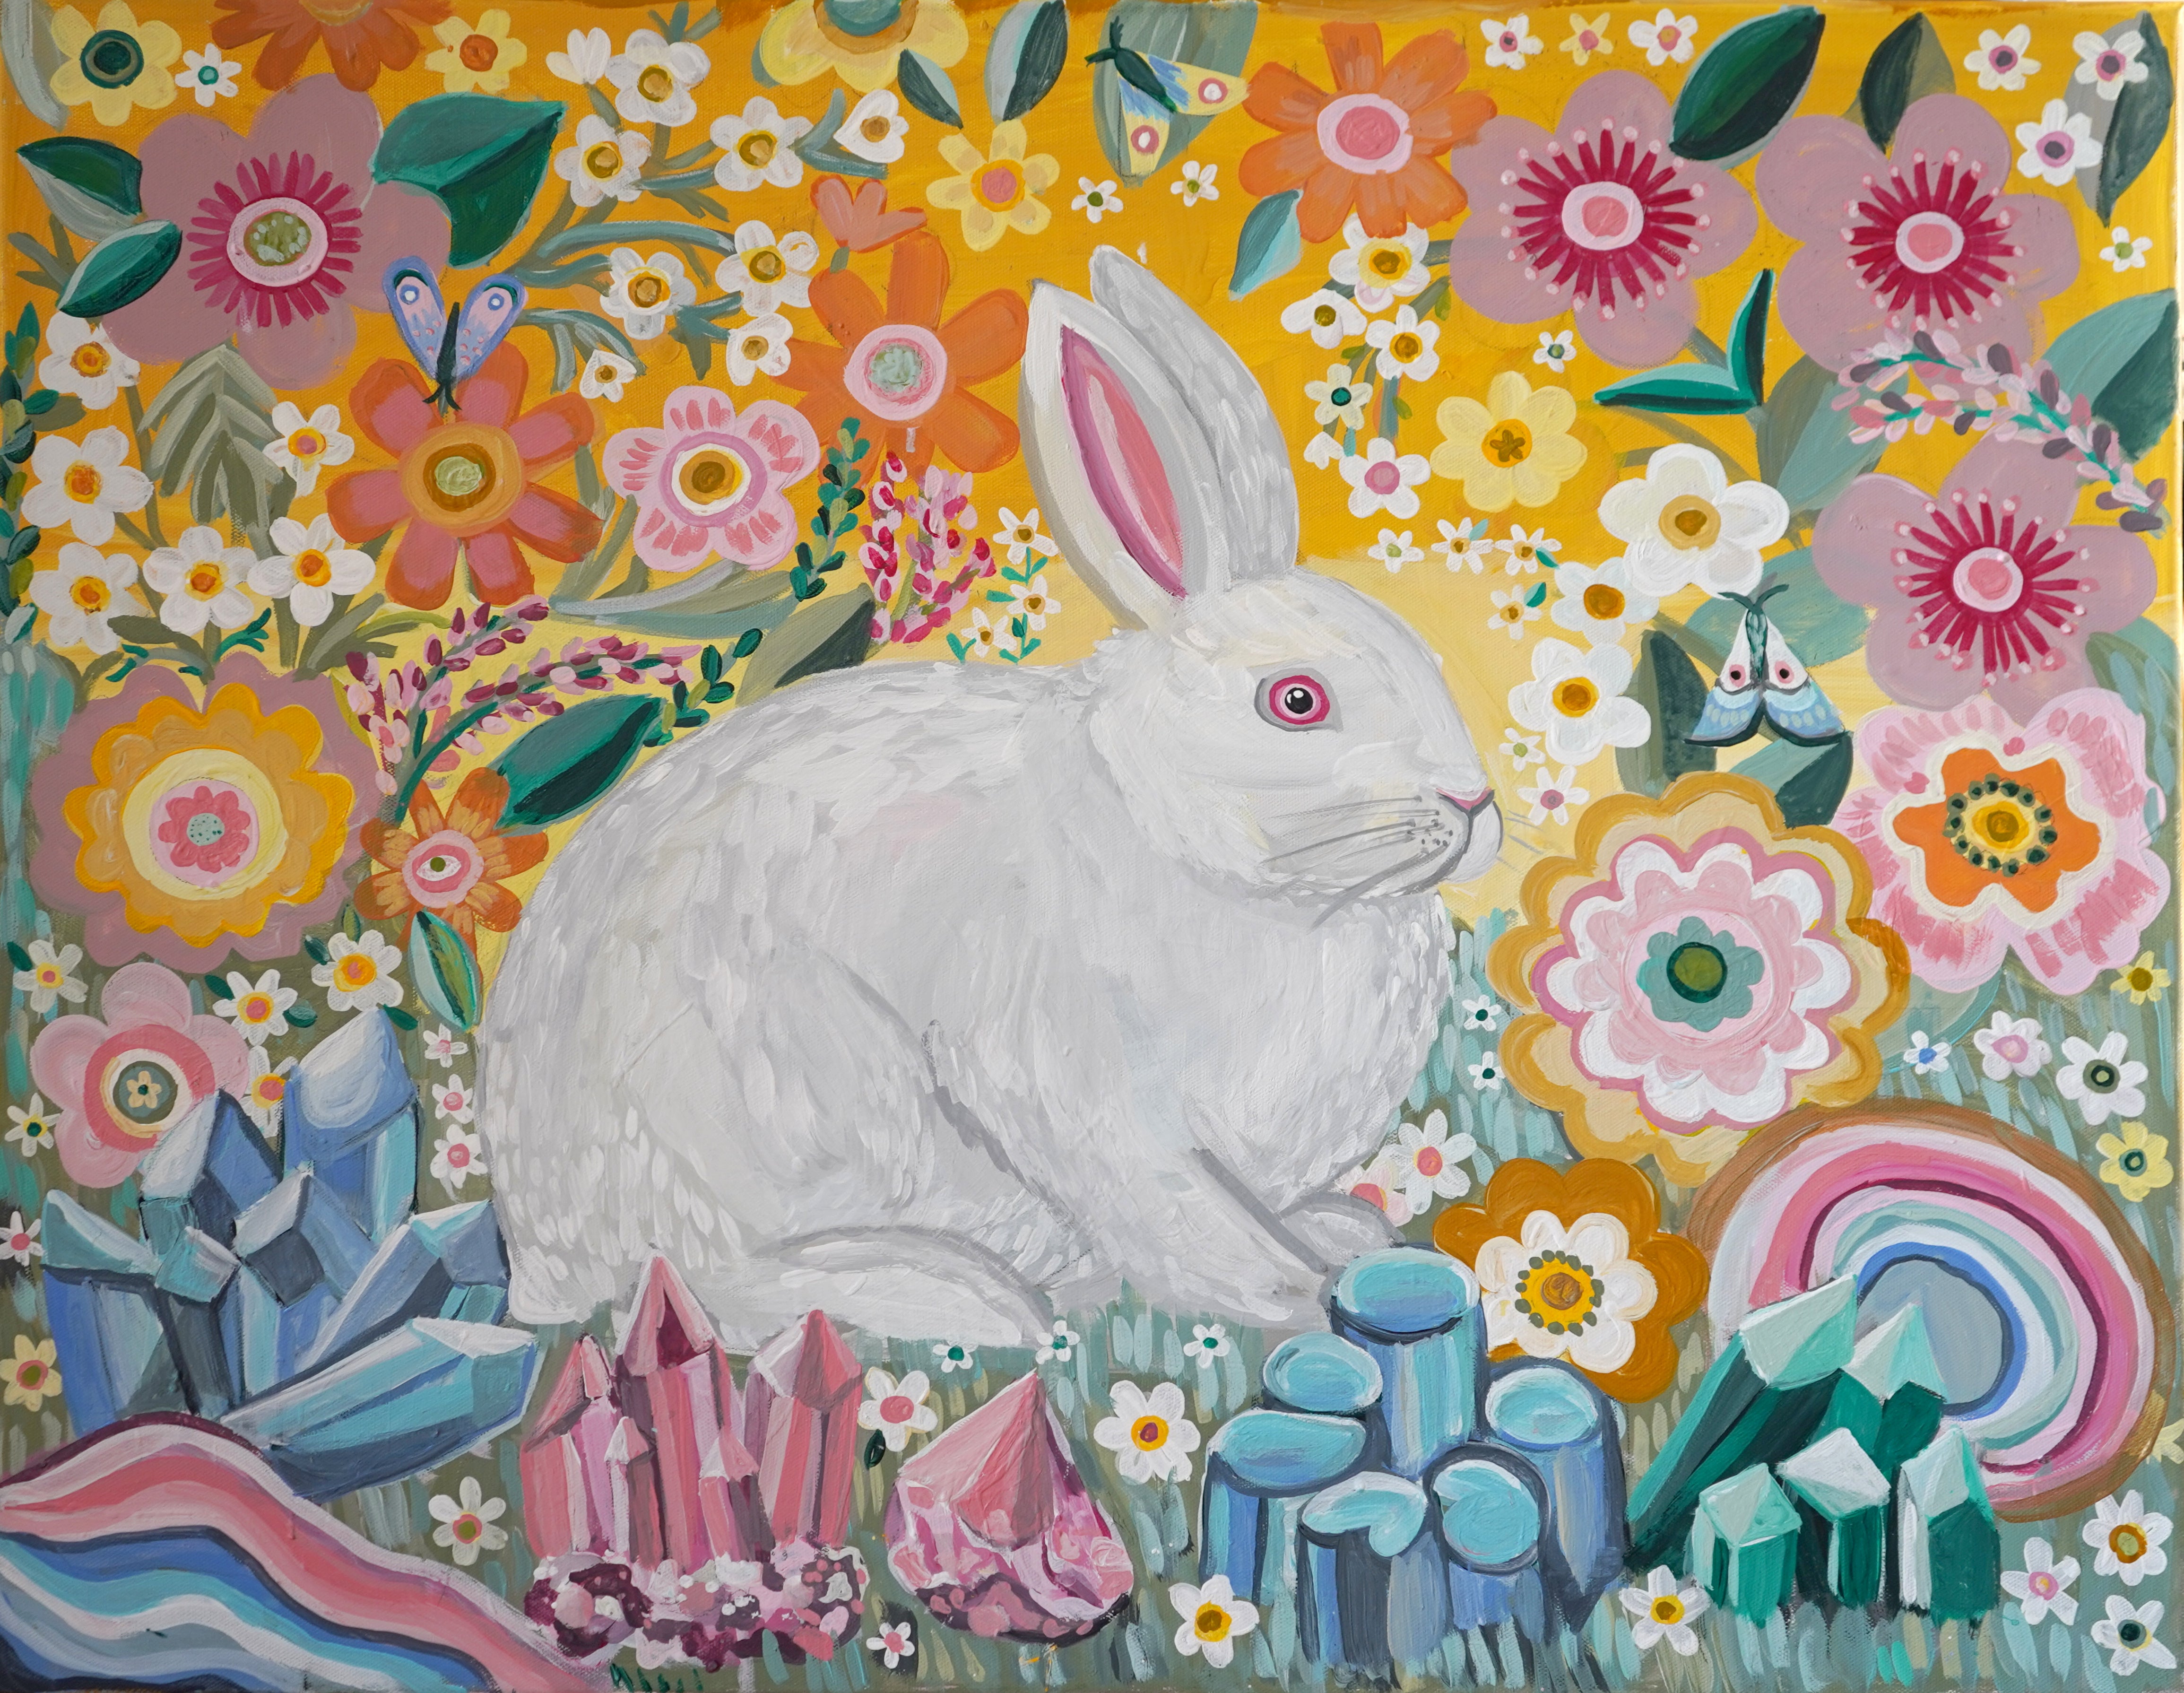 White Rabbit Print